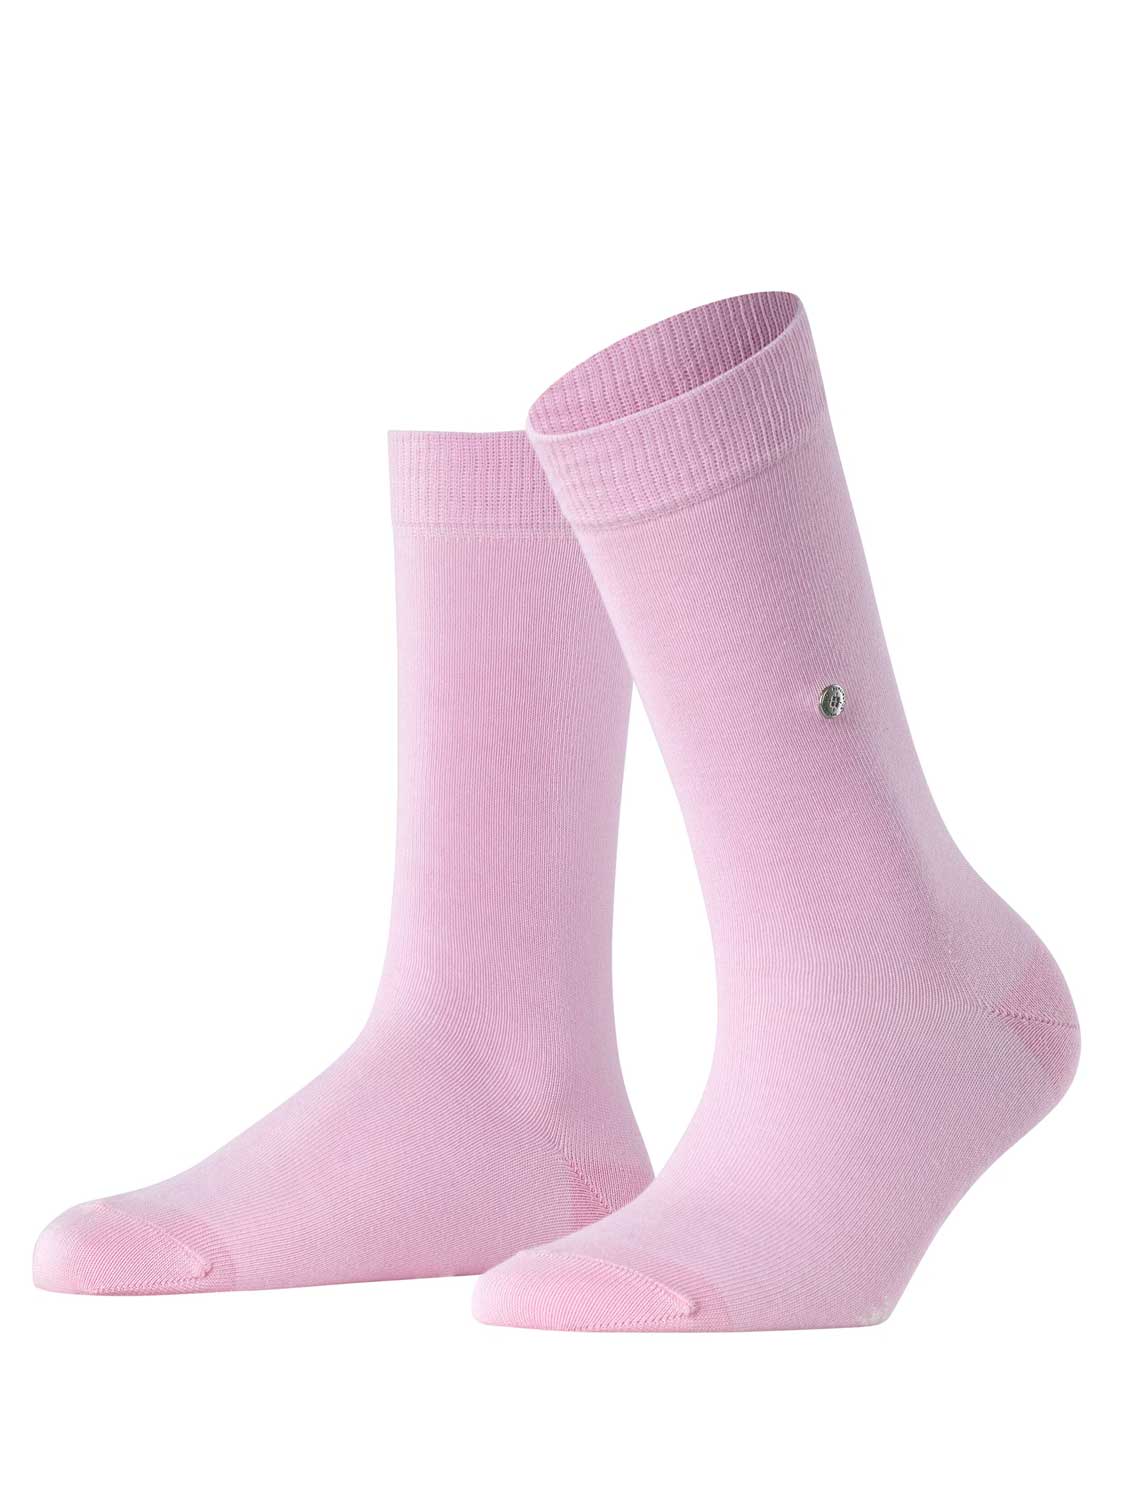 Socks - Lady